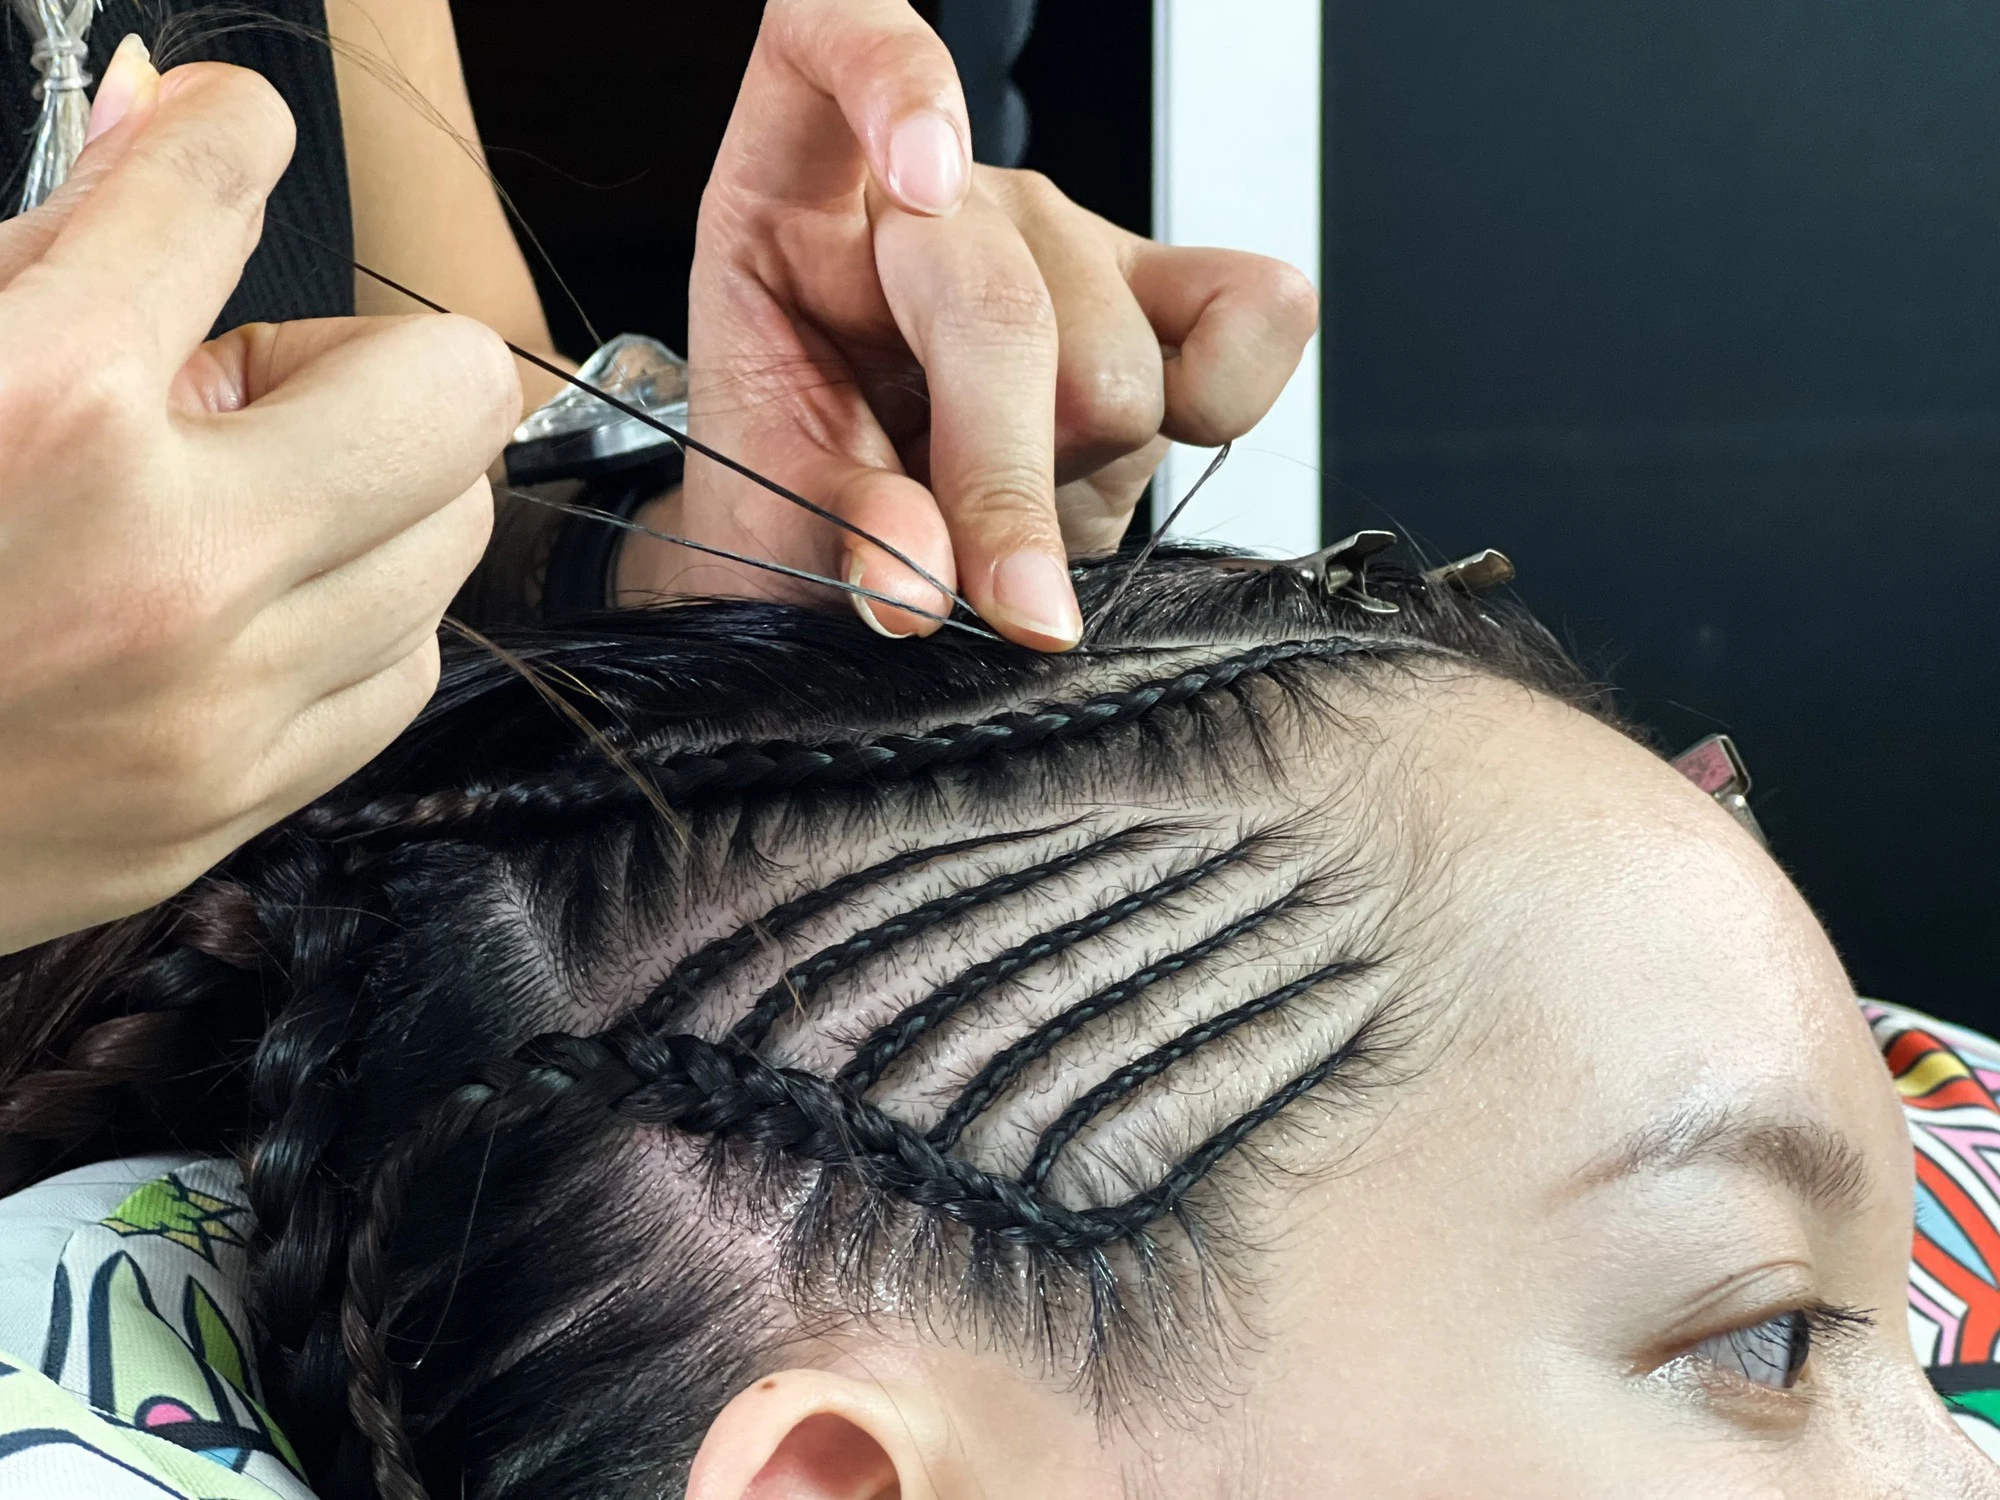 Phụ kiện tóc ) lược cắt tóc makar dành cho thợ tóc chuyên nghiệp hoặc cắt  tóc tại nhà ( phụ kiện tóc) | Shopee Việt Nam